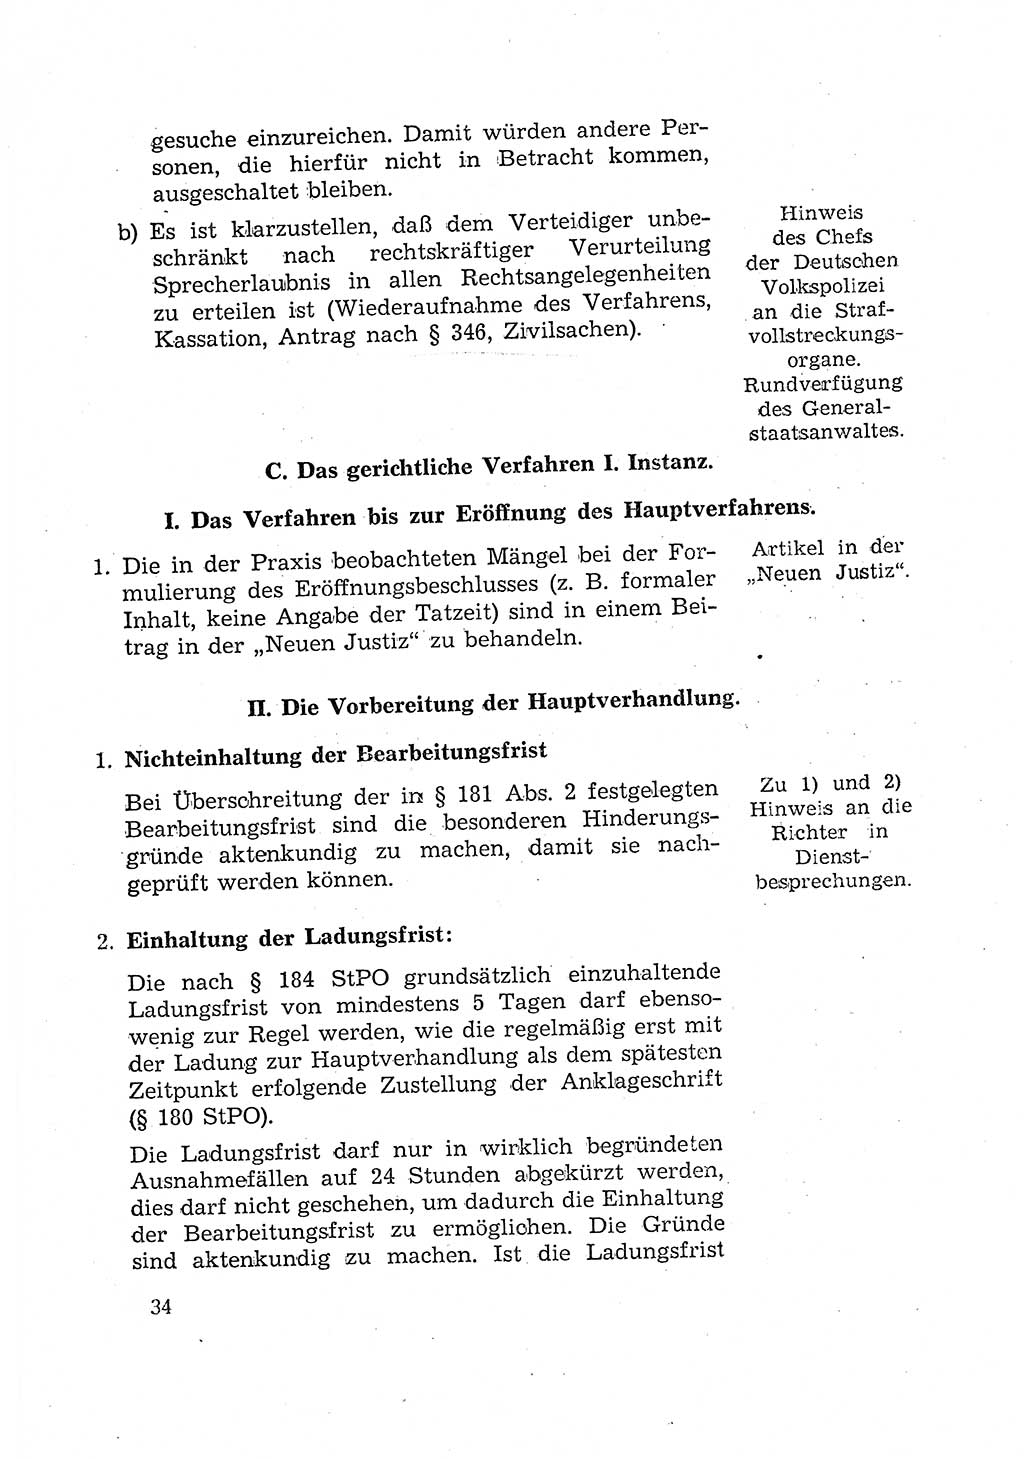 Bericht der Kommission zur Überprüfung der Anwendung der StPO (Strafprozeßordnung) [Deutsche Demokratische Republik (DDR)] 1956, Seite 34 (Ber. StPO DDR 1956, S. 34)